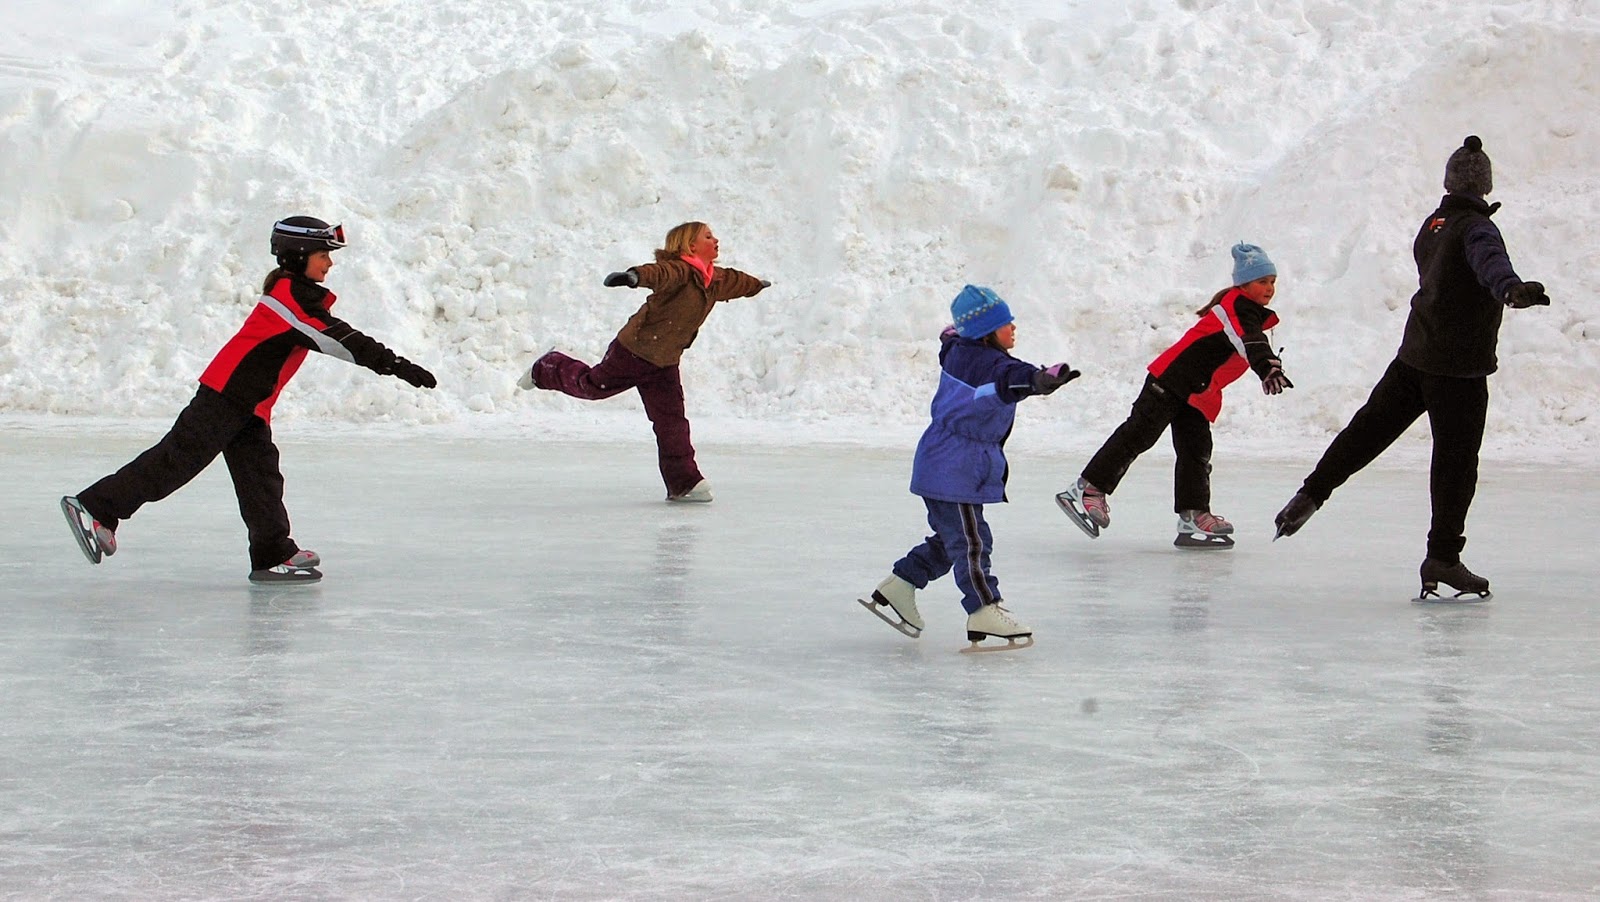 Покататься на коньках на катке. Дети катаются на коньках. Дети на катке. Дети катиаю ся на коньках. Коньки на льду.